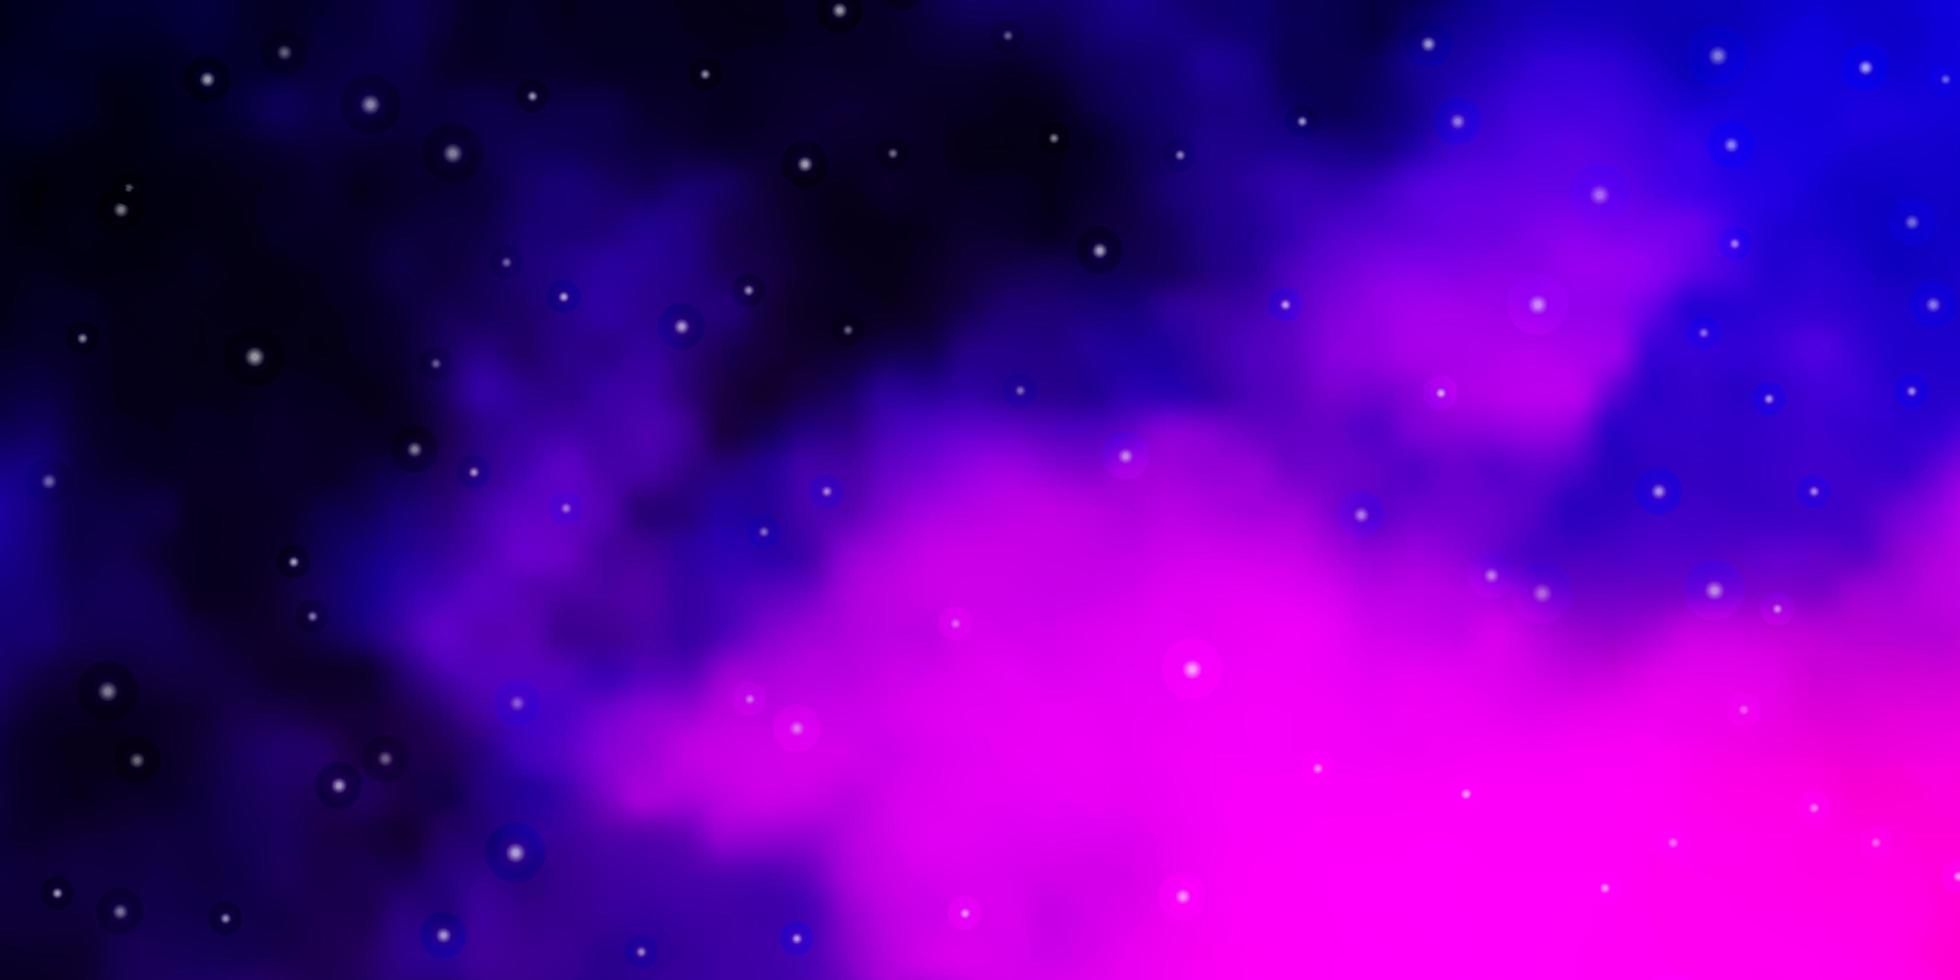 Fondo de vector púrpura oscuro con estrellas de colores difuminado diseño decorativo en estilo simple con estrellas mejor diseño para su banner de cartel publicitario